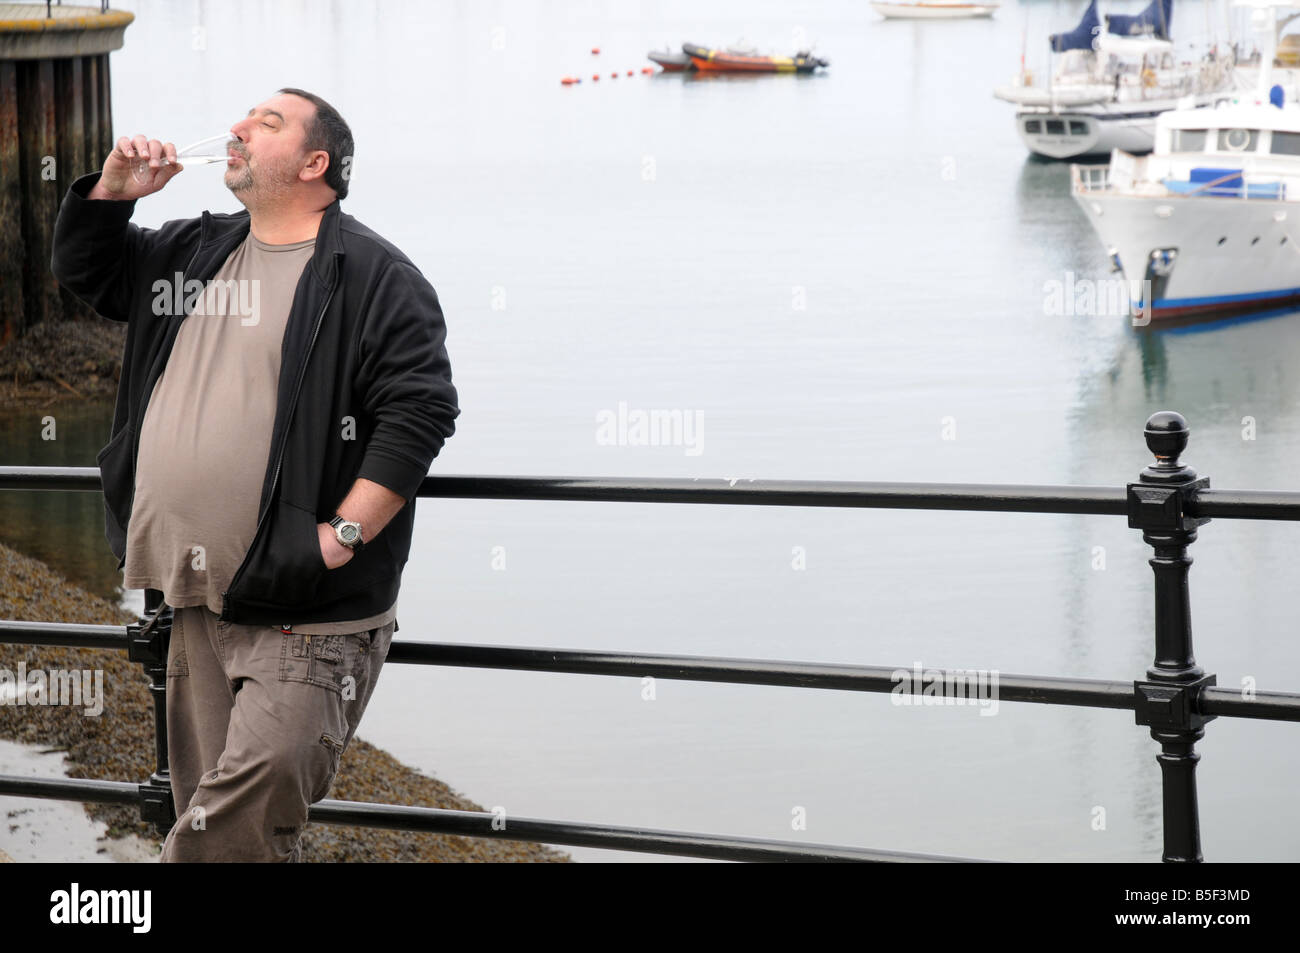 Un homme boit en désordre champagne au Falmouth Oyster Festival, UK Banque D'Images